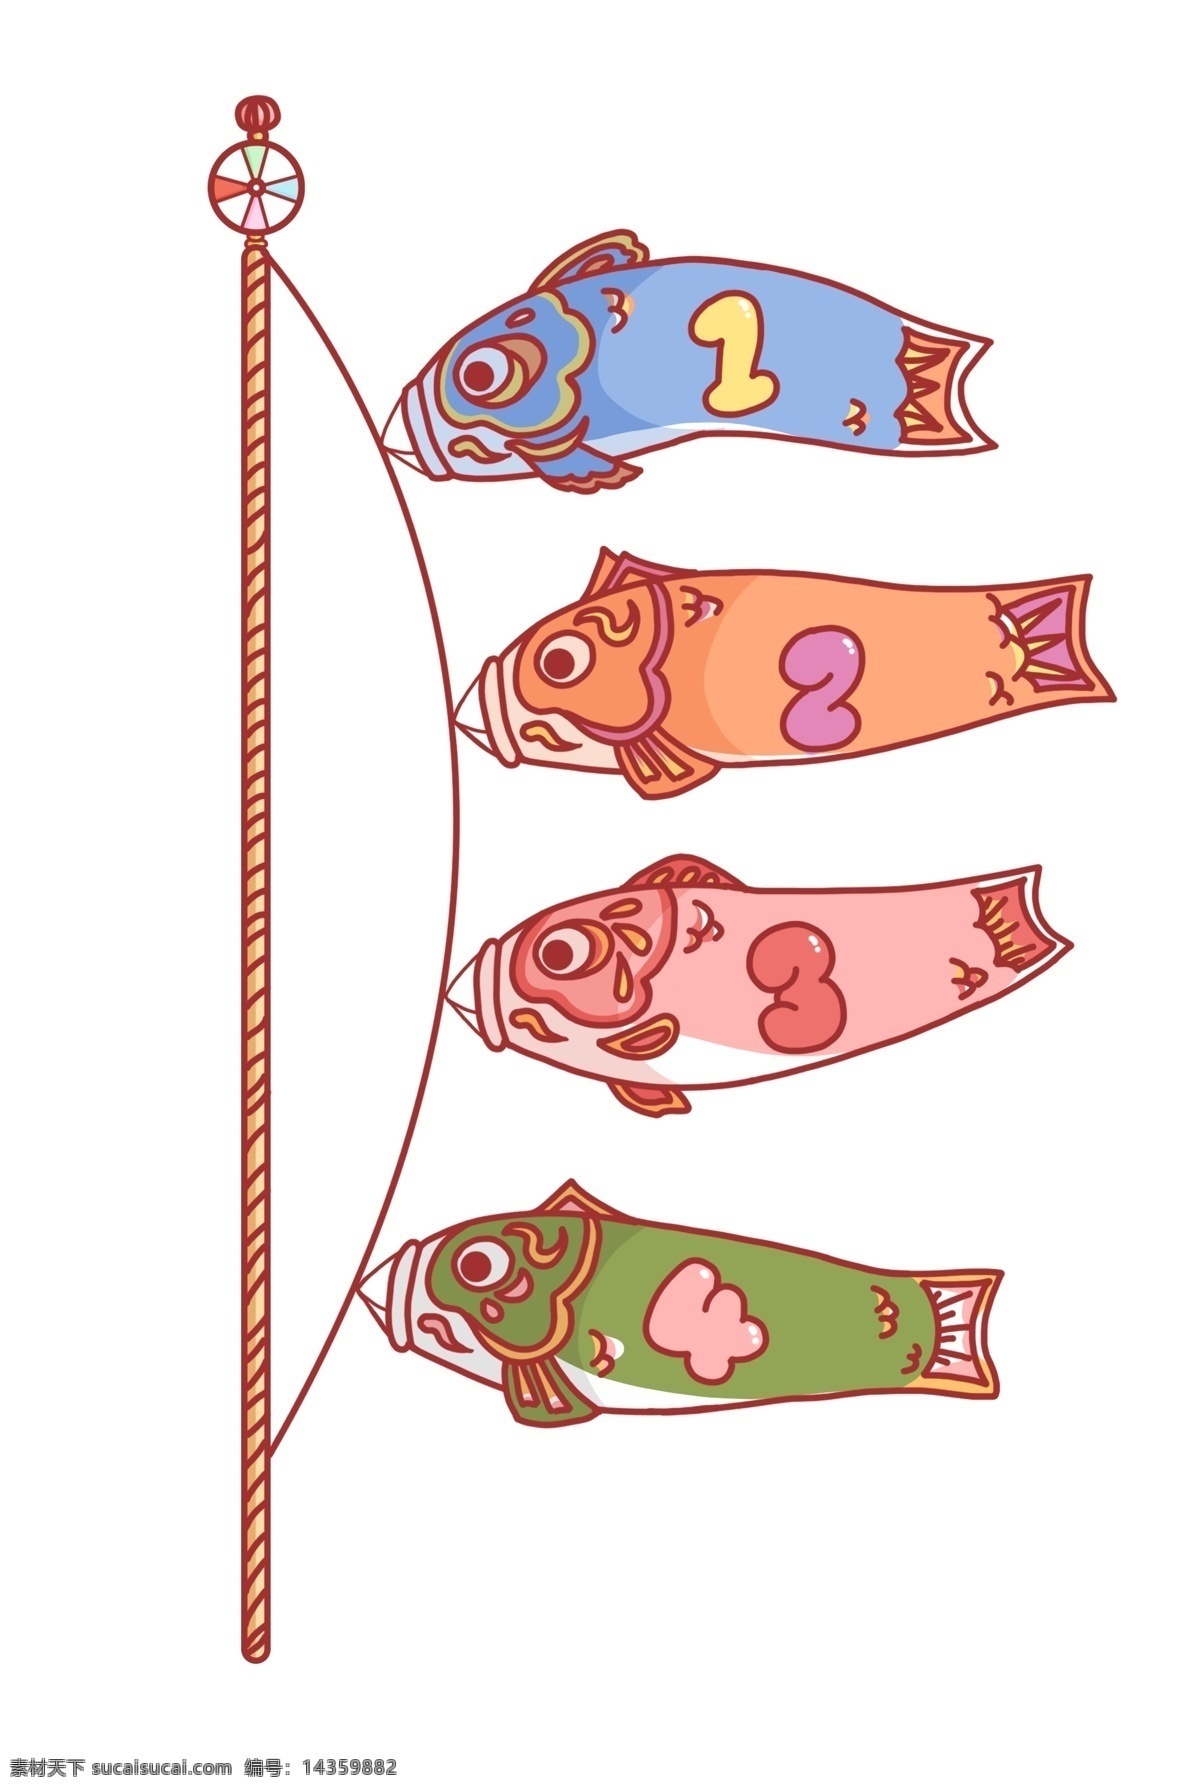 卡通 鱼类 装饰 插图 数字装饰 小鱼图案 立体小鱼 鱼竿钓鱼 清新条例 分类小鱼 数字序列 素色简约